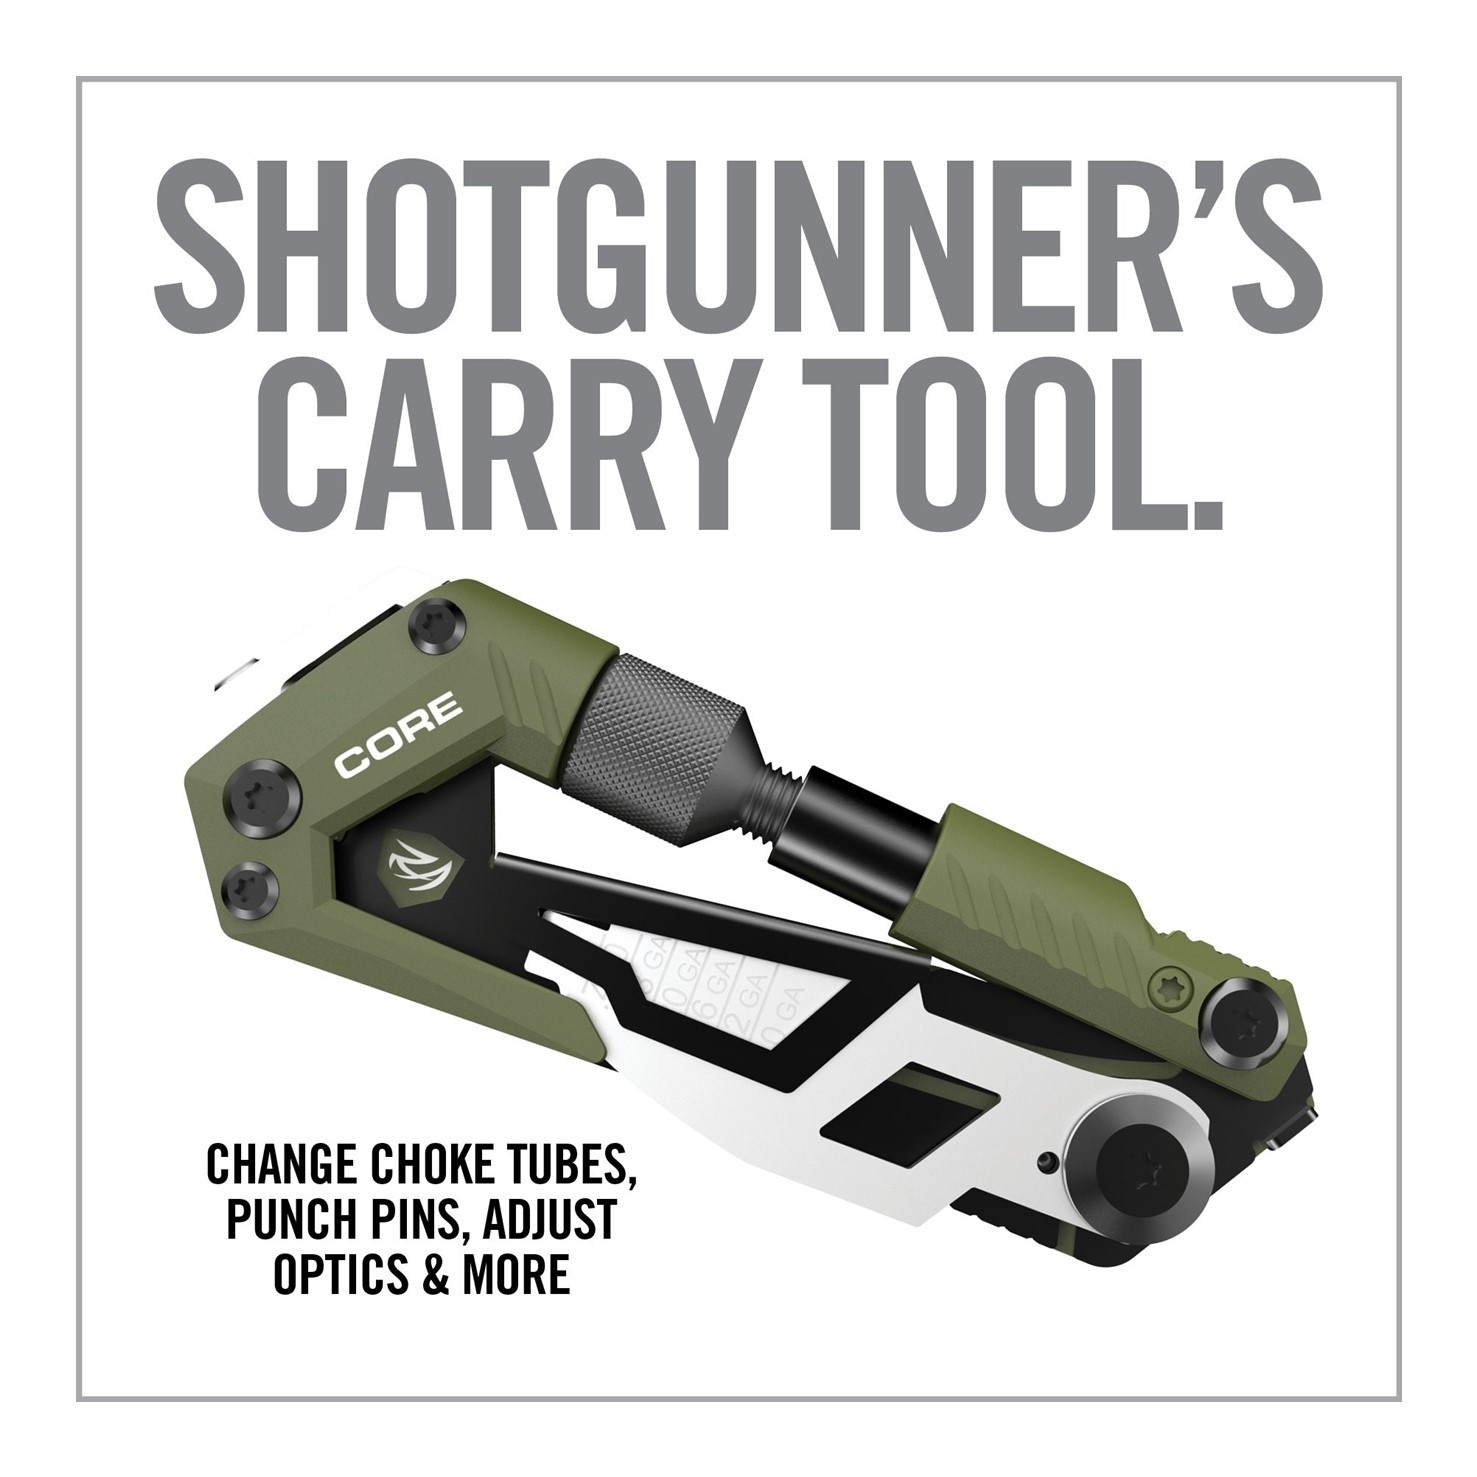 Real Avid Gun Tool Core - Shotgun